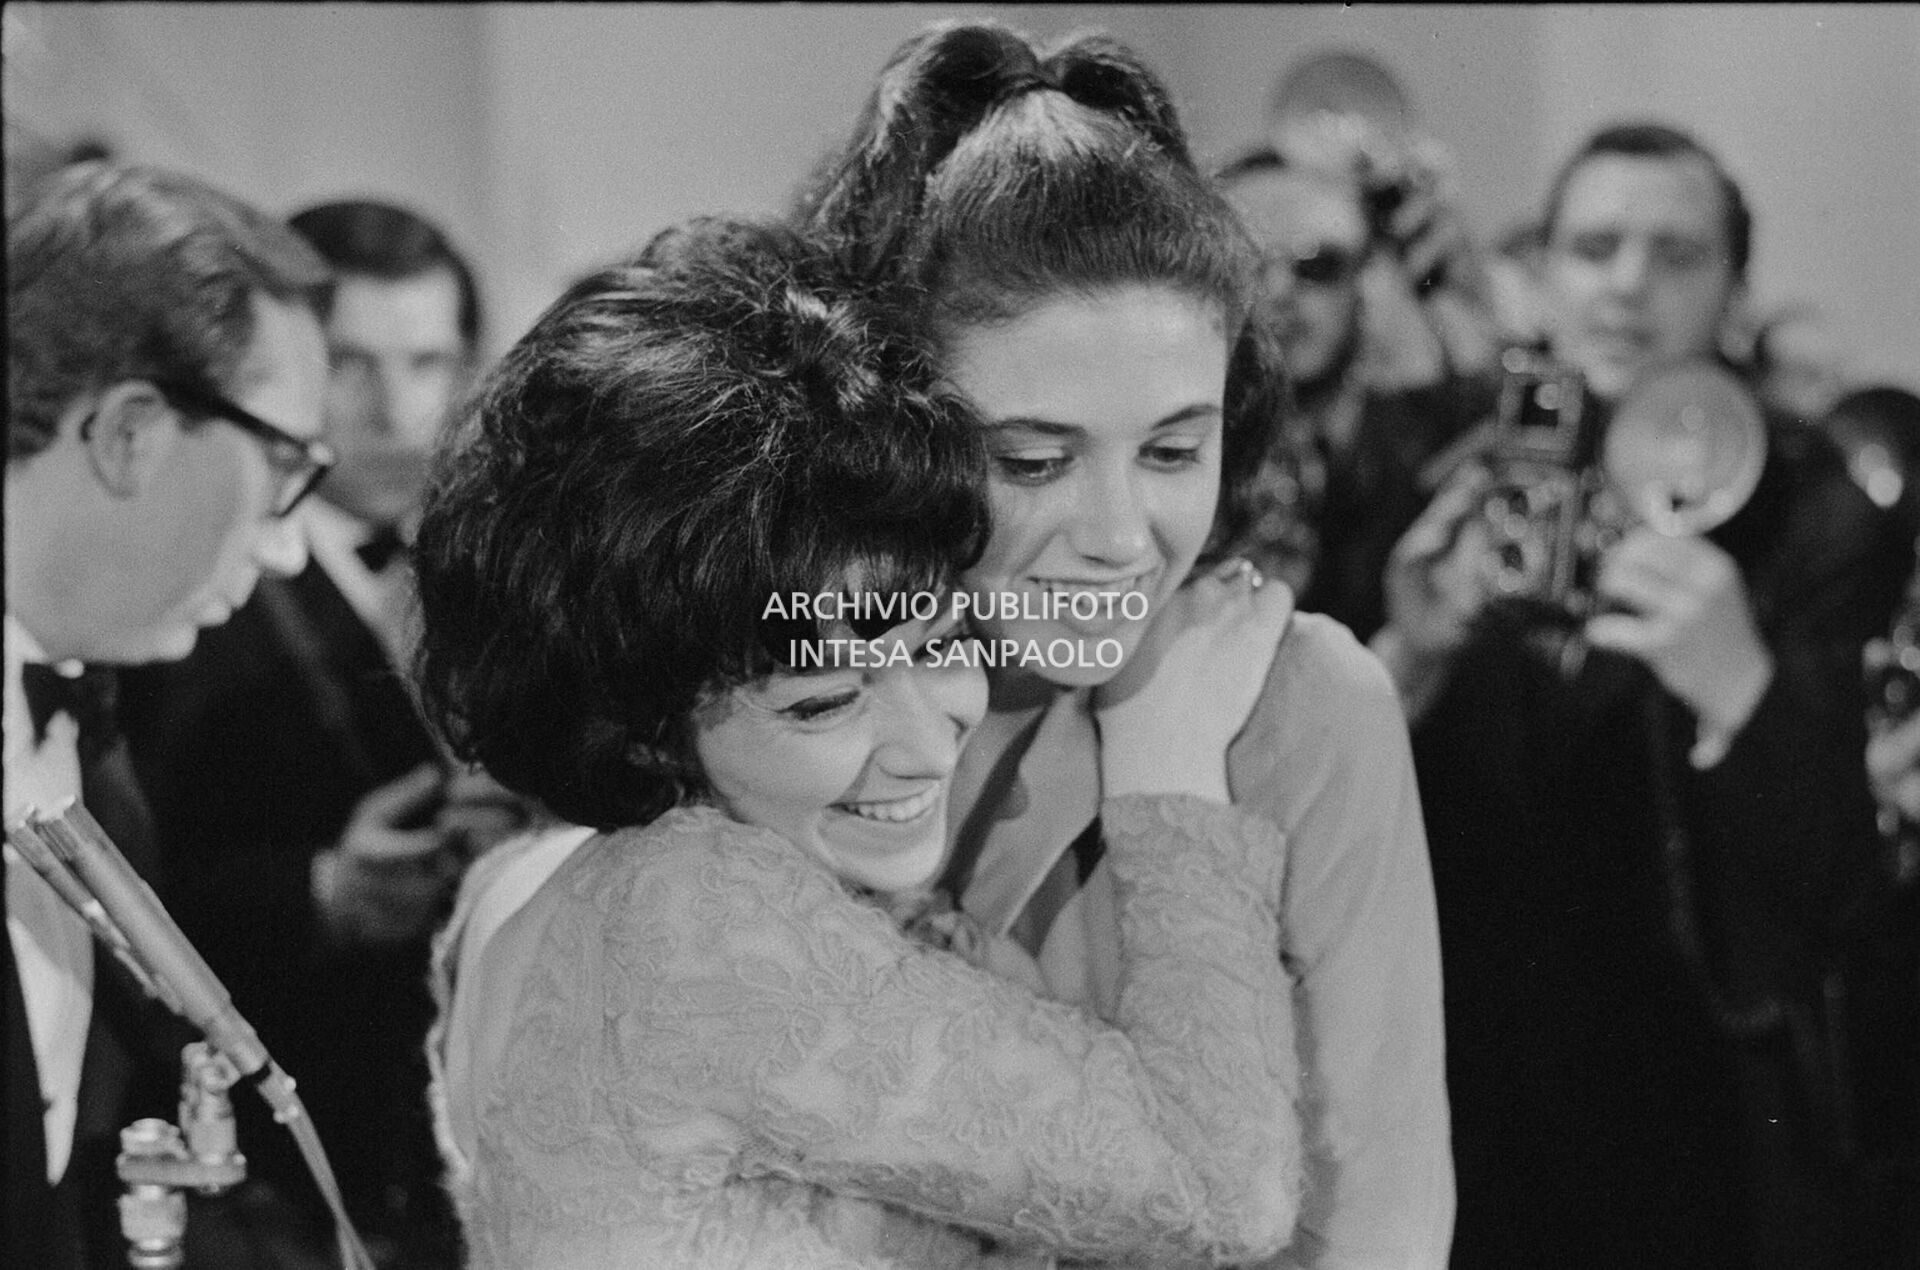 Gigliola Cinquetti e Patricia Carli, vincitrici  del XIV Festival di Sanremo, con la canzone "Non ho l'età", si abbracciano; alle loro spalle Mike Bongiorno